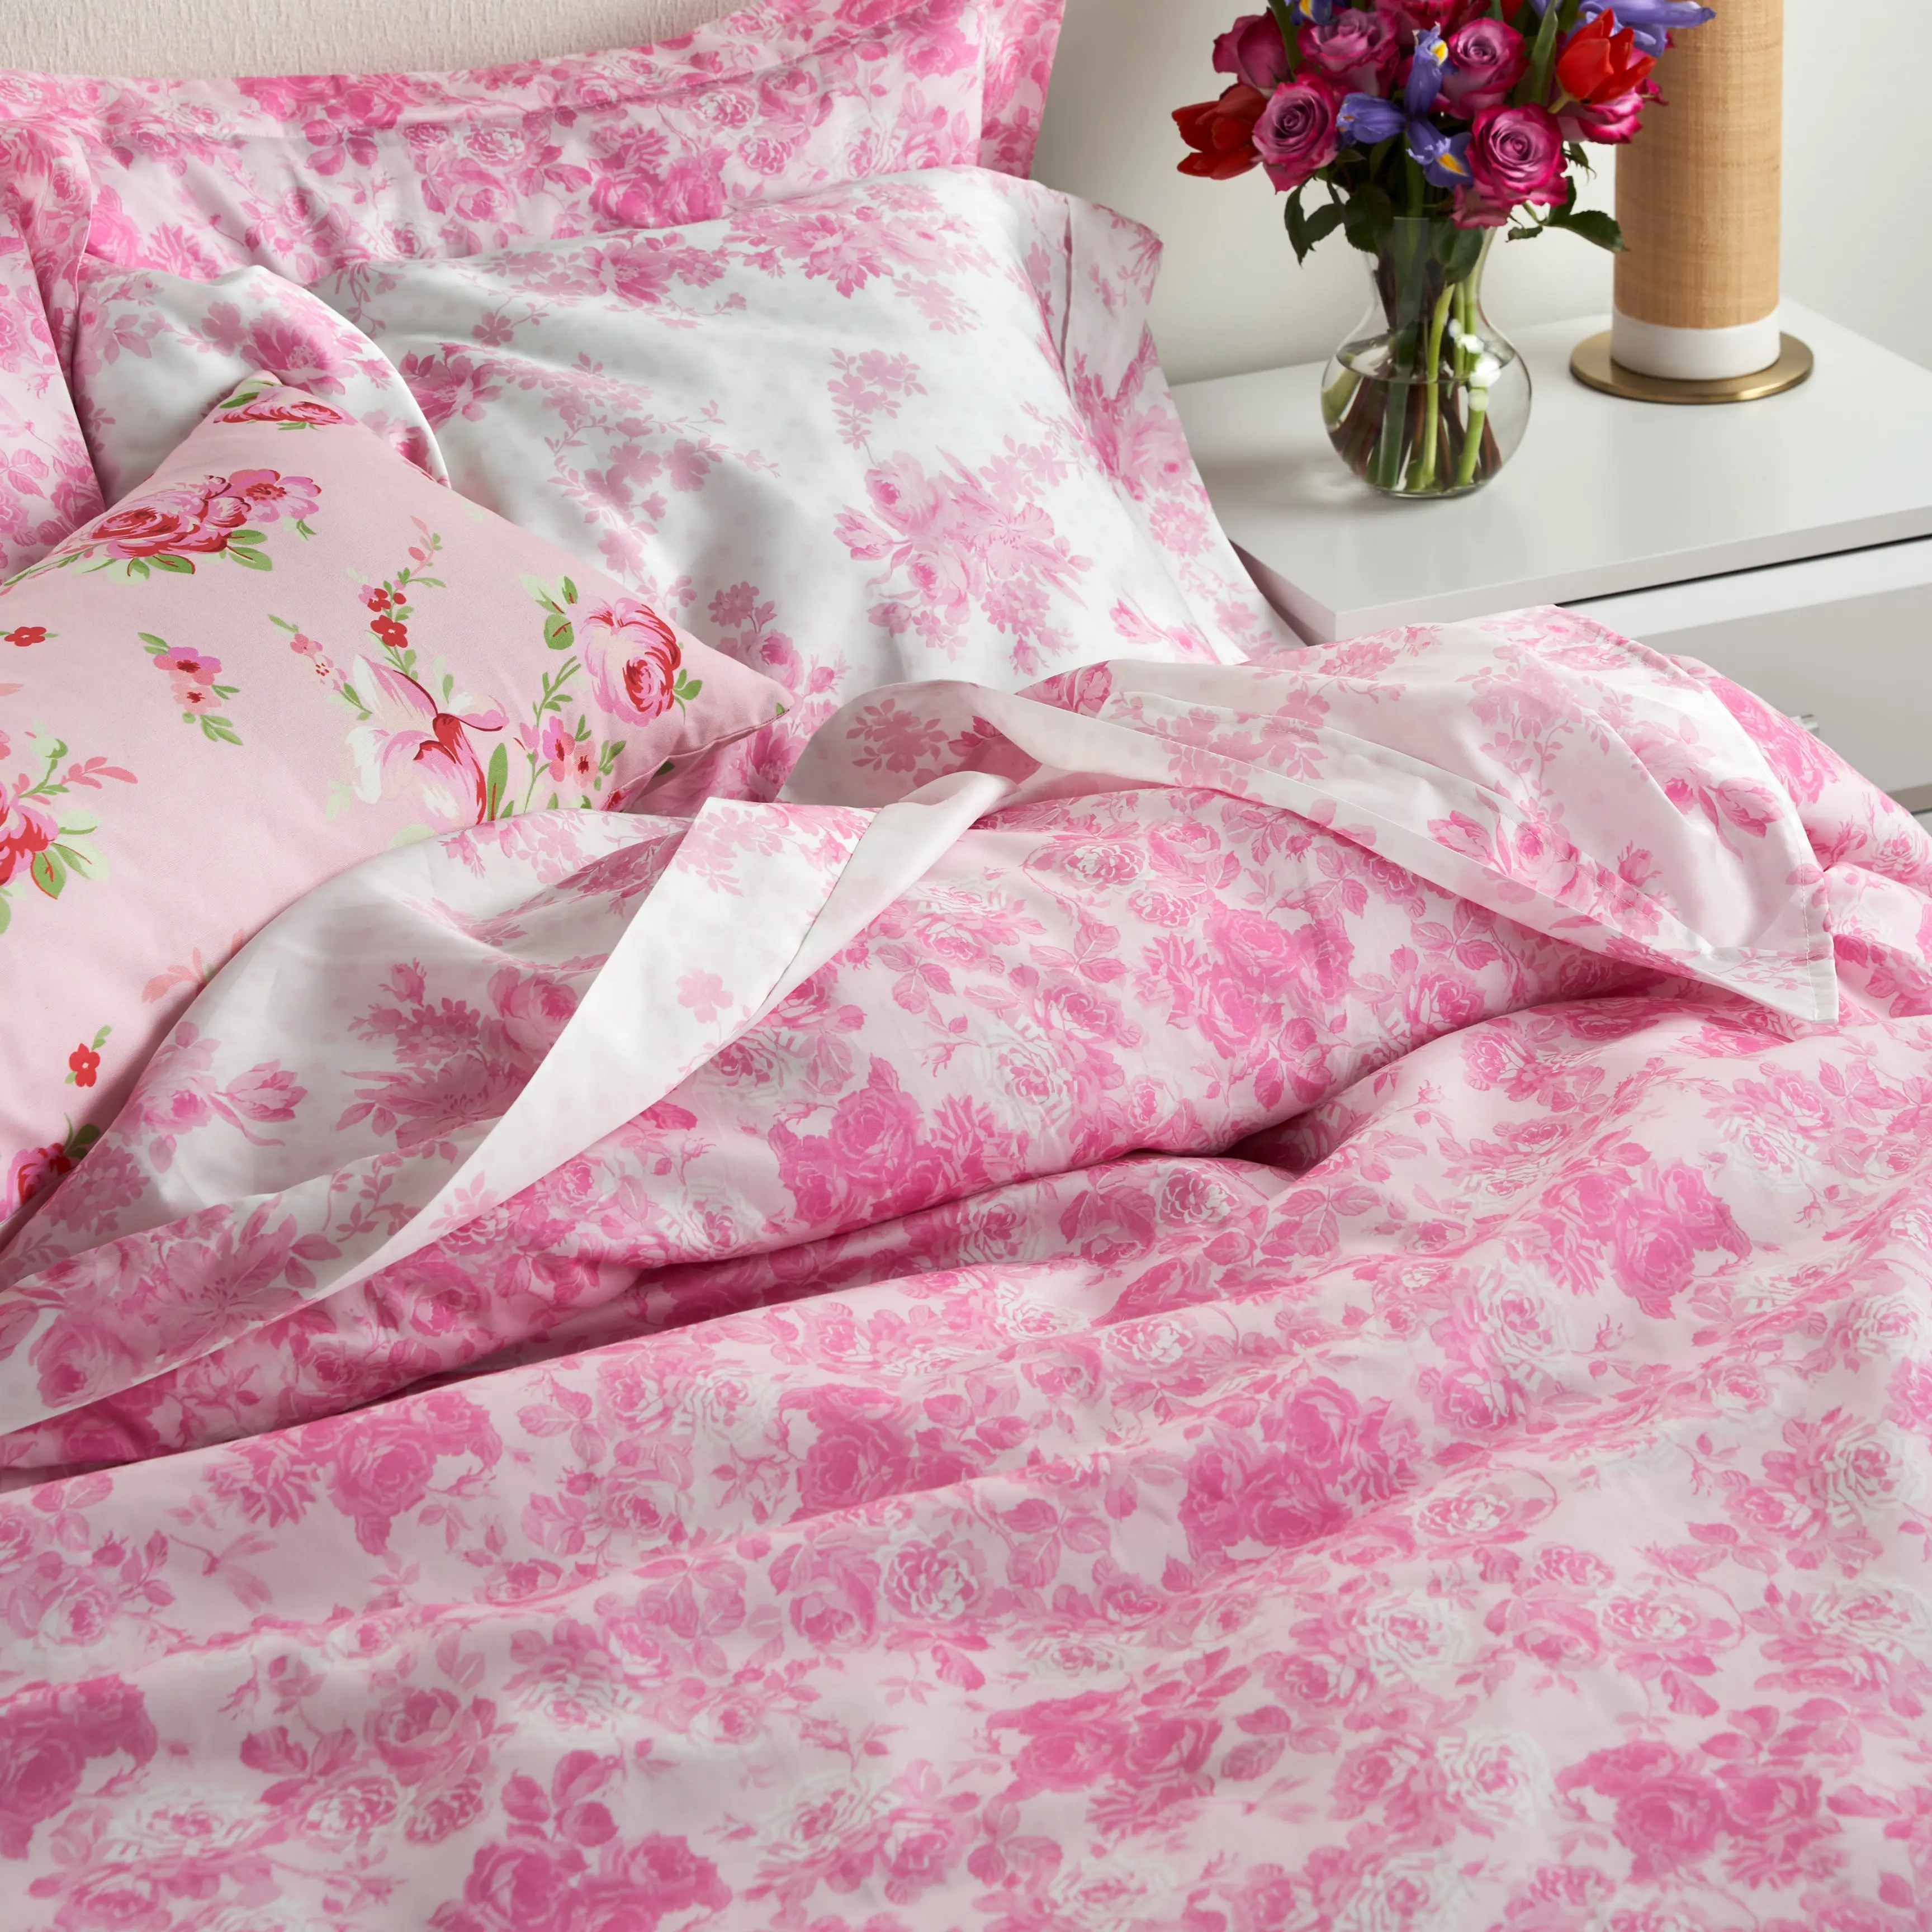 Pink floral duvet cover